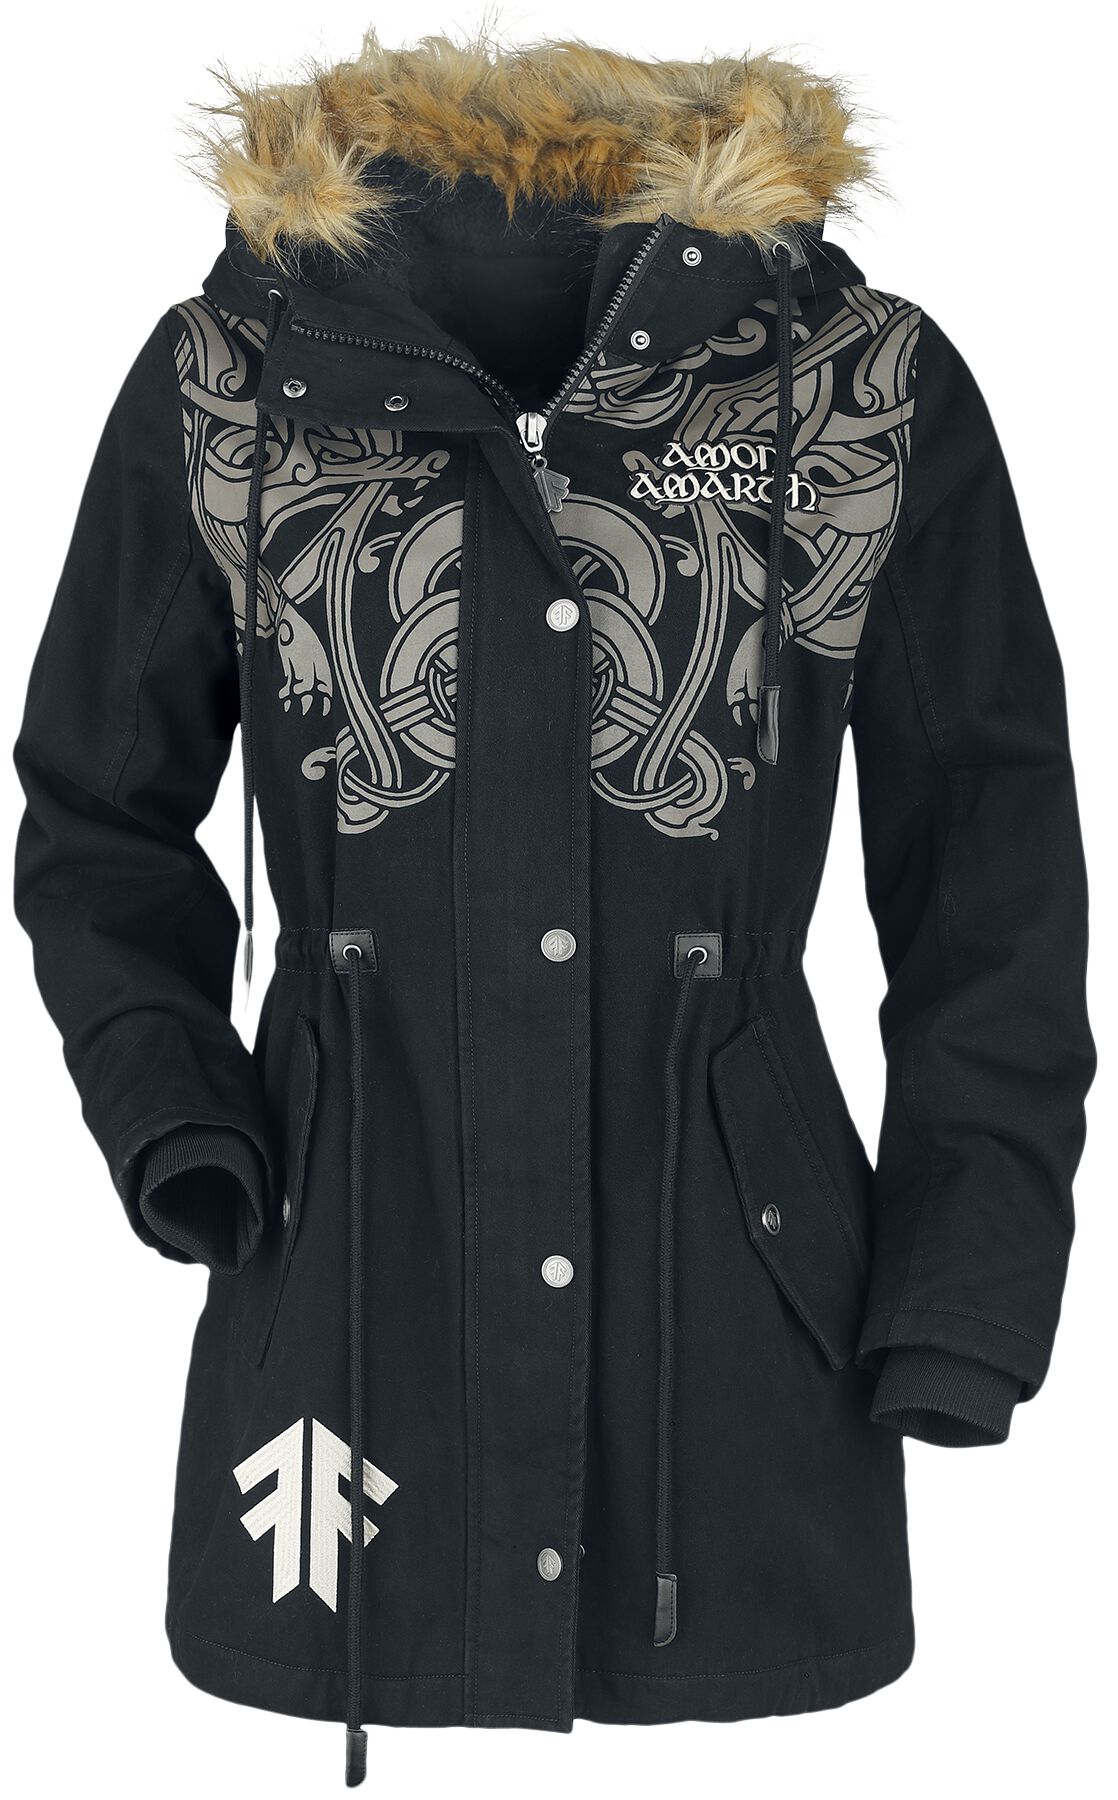 Amon Amarth Winterjacke - EMP Signature Collection - S bis XL - für Damen - Größe XL - schwarz  - EMP exklusives Merchandise!